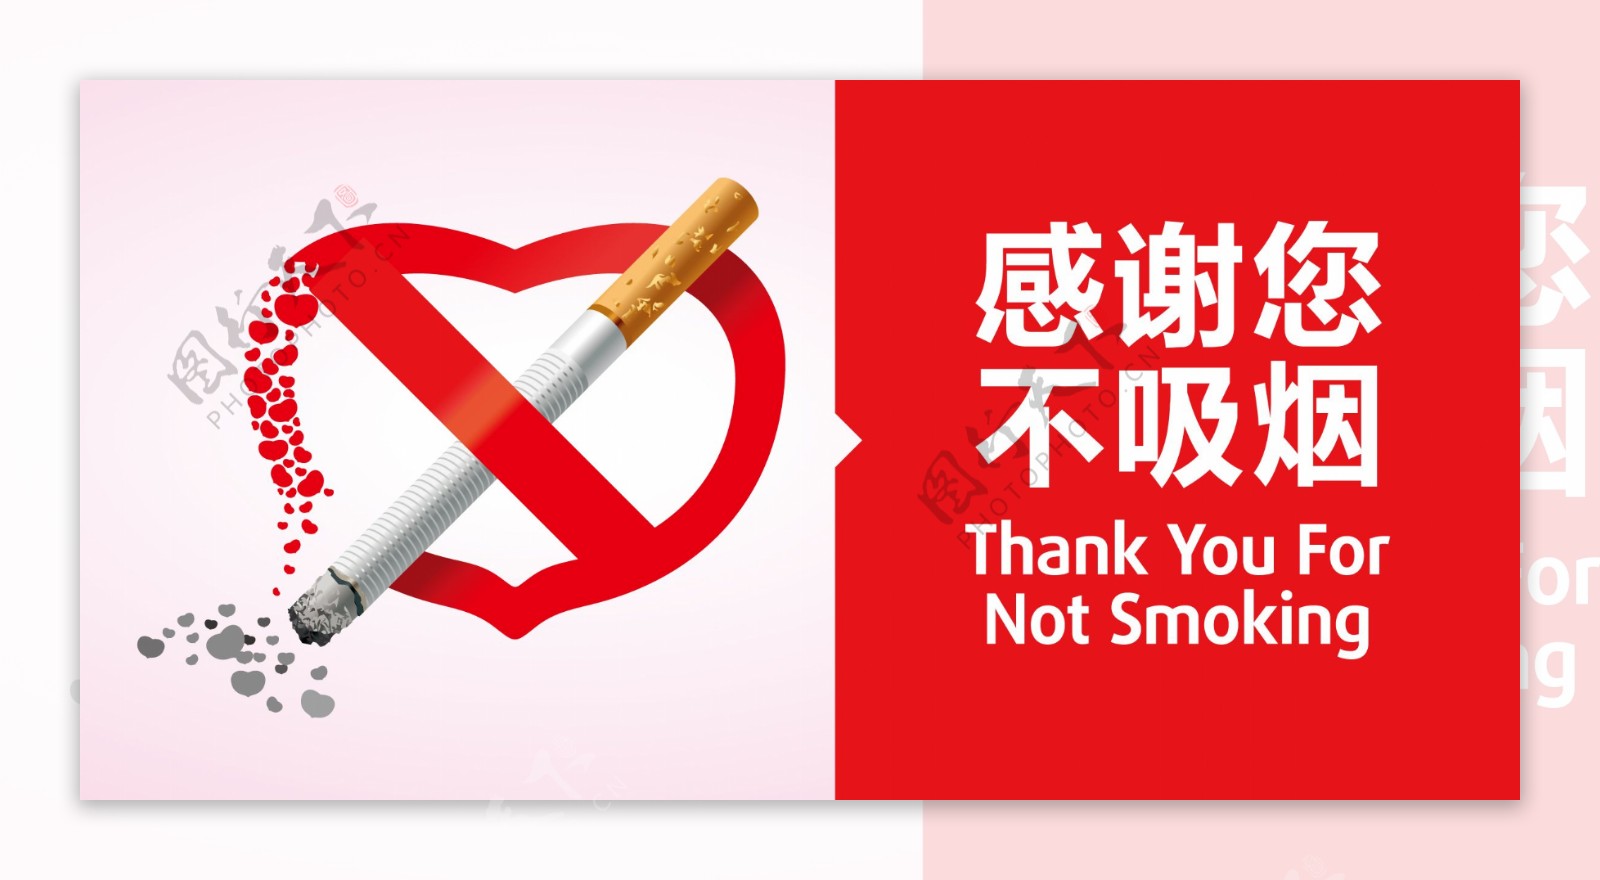 禁止吸烟标识图片